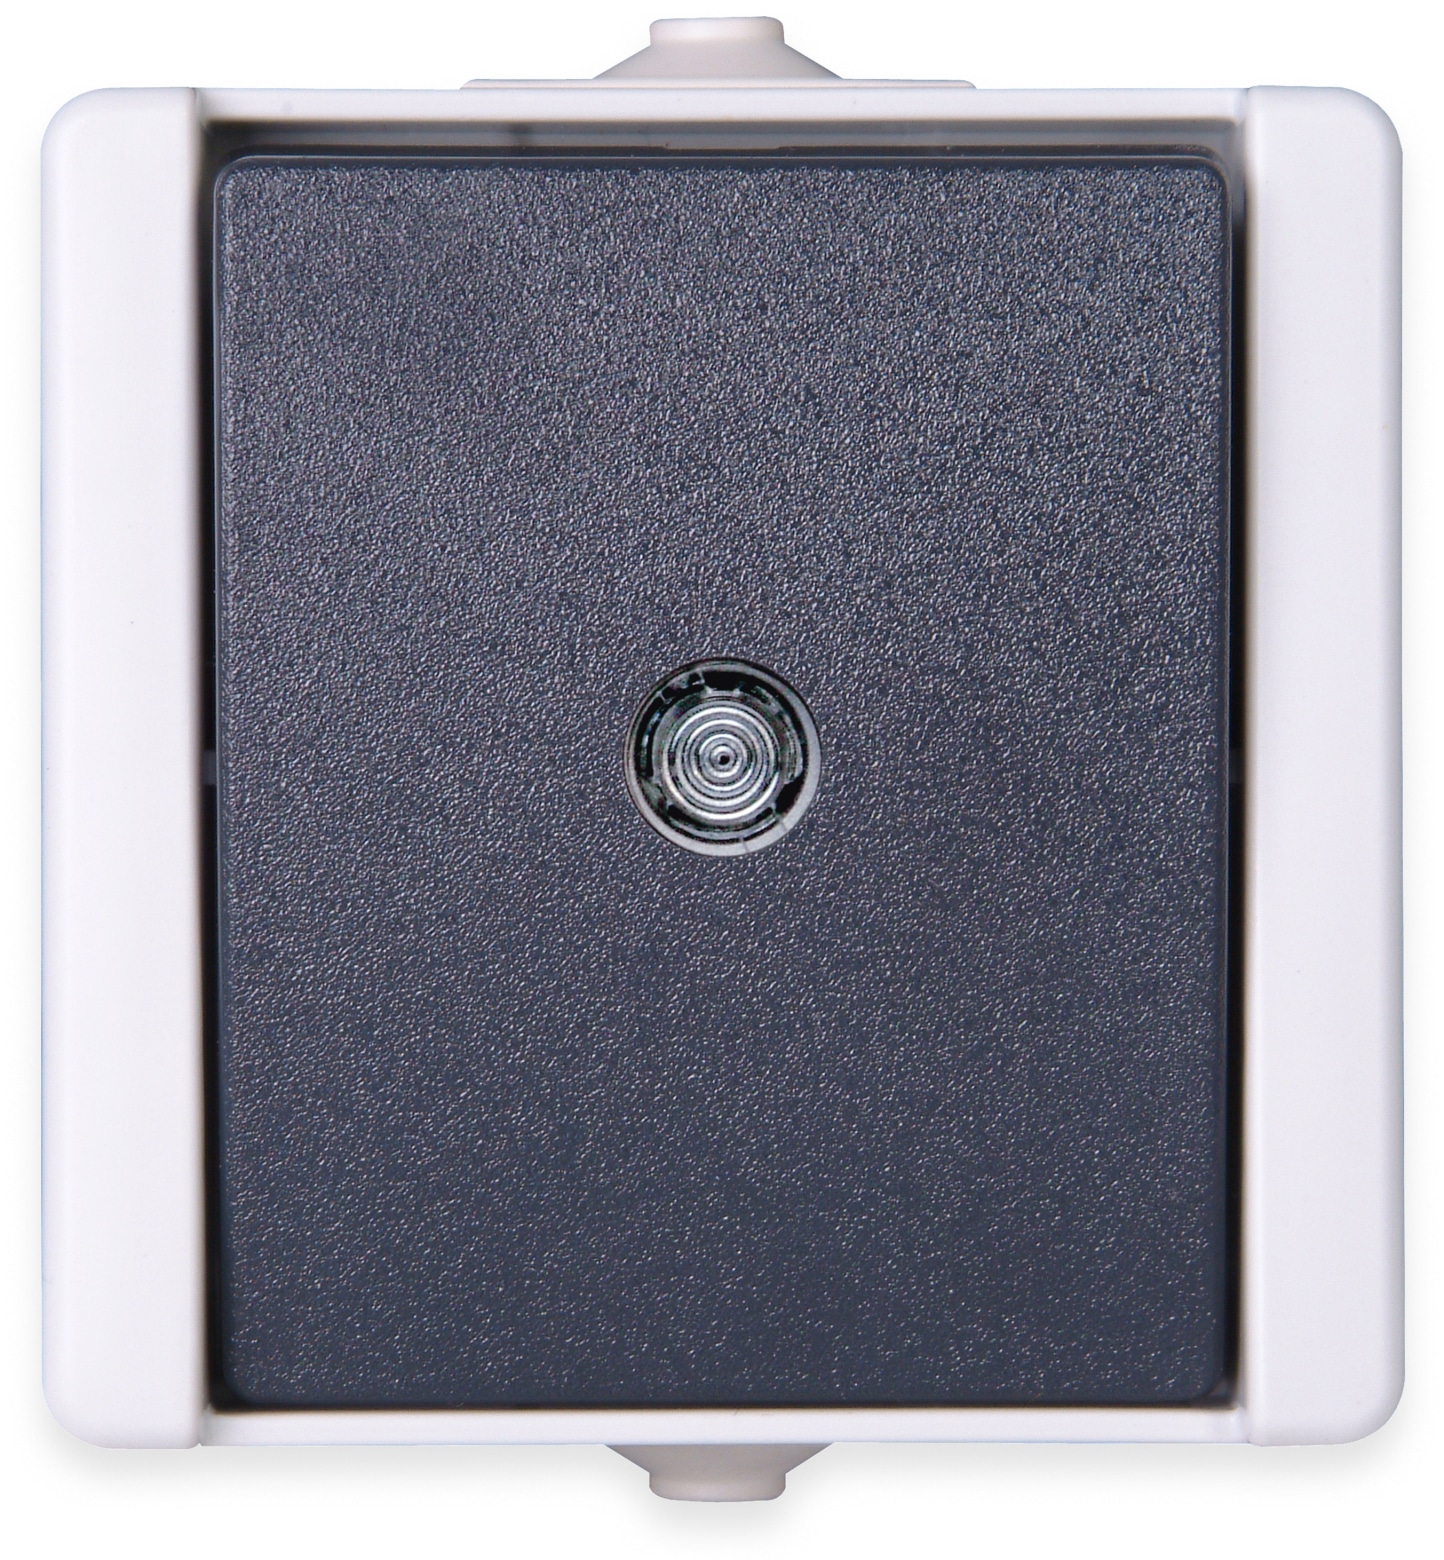 KOPP Feuchtraum-Taster proAQA 540396001, beleuchtet, grau